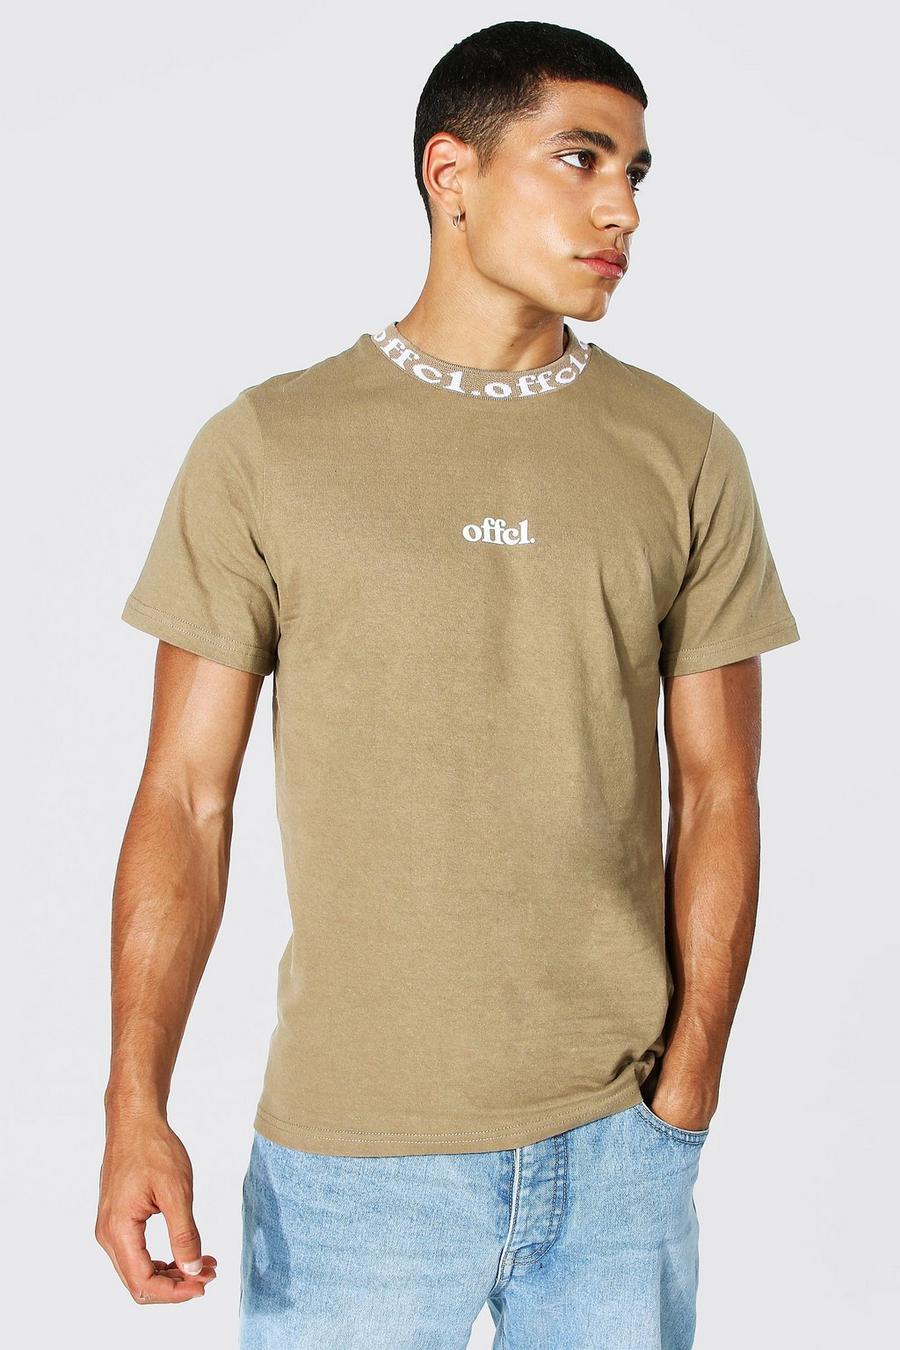 Ofcl MAN T-Shirt mit Jacquard-Ausschnitt, Kaffeebraun marron image number 1